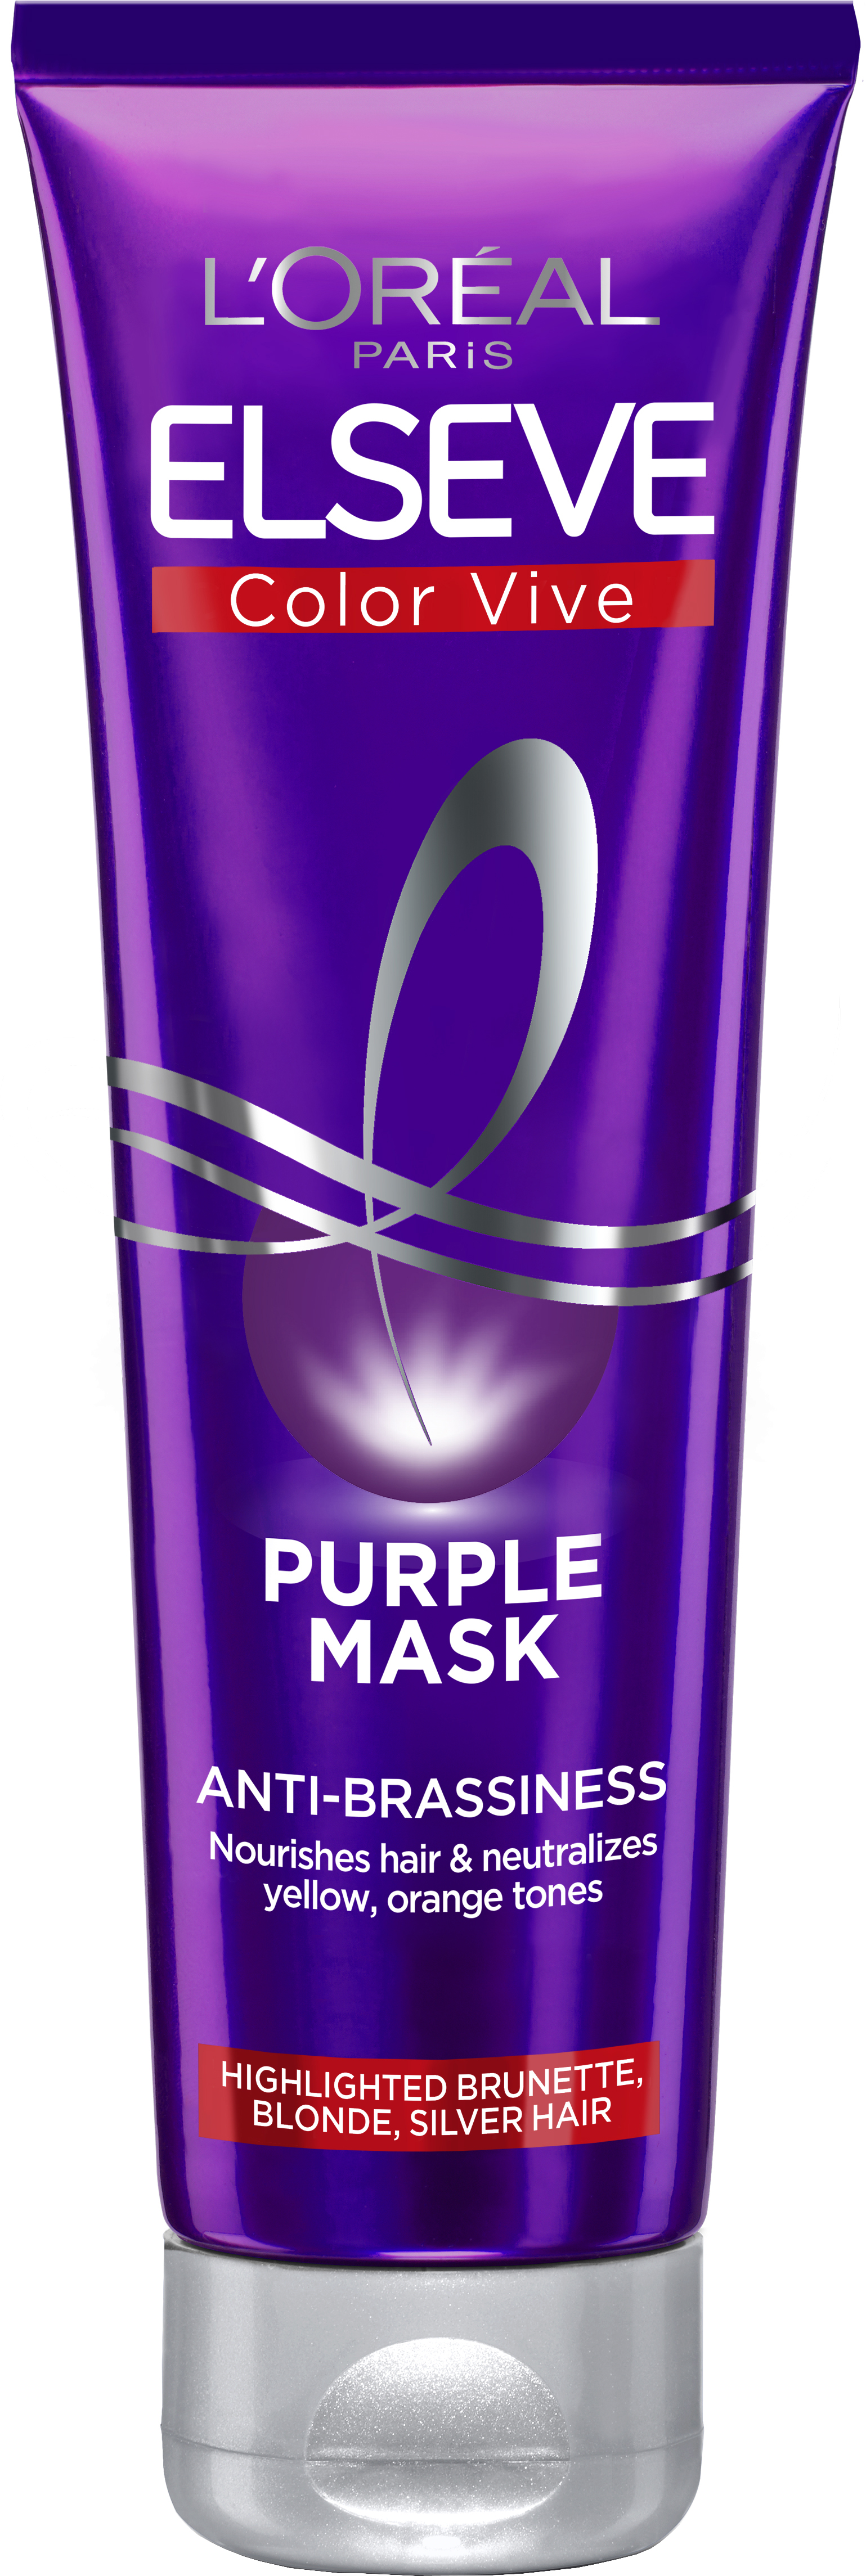 Тонуюча маска L'Oreal Paris Elseve Color Vive Purple для освітленого та мелірованого волосся, 150 мл - фото 1